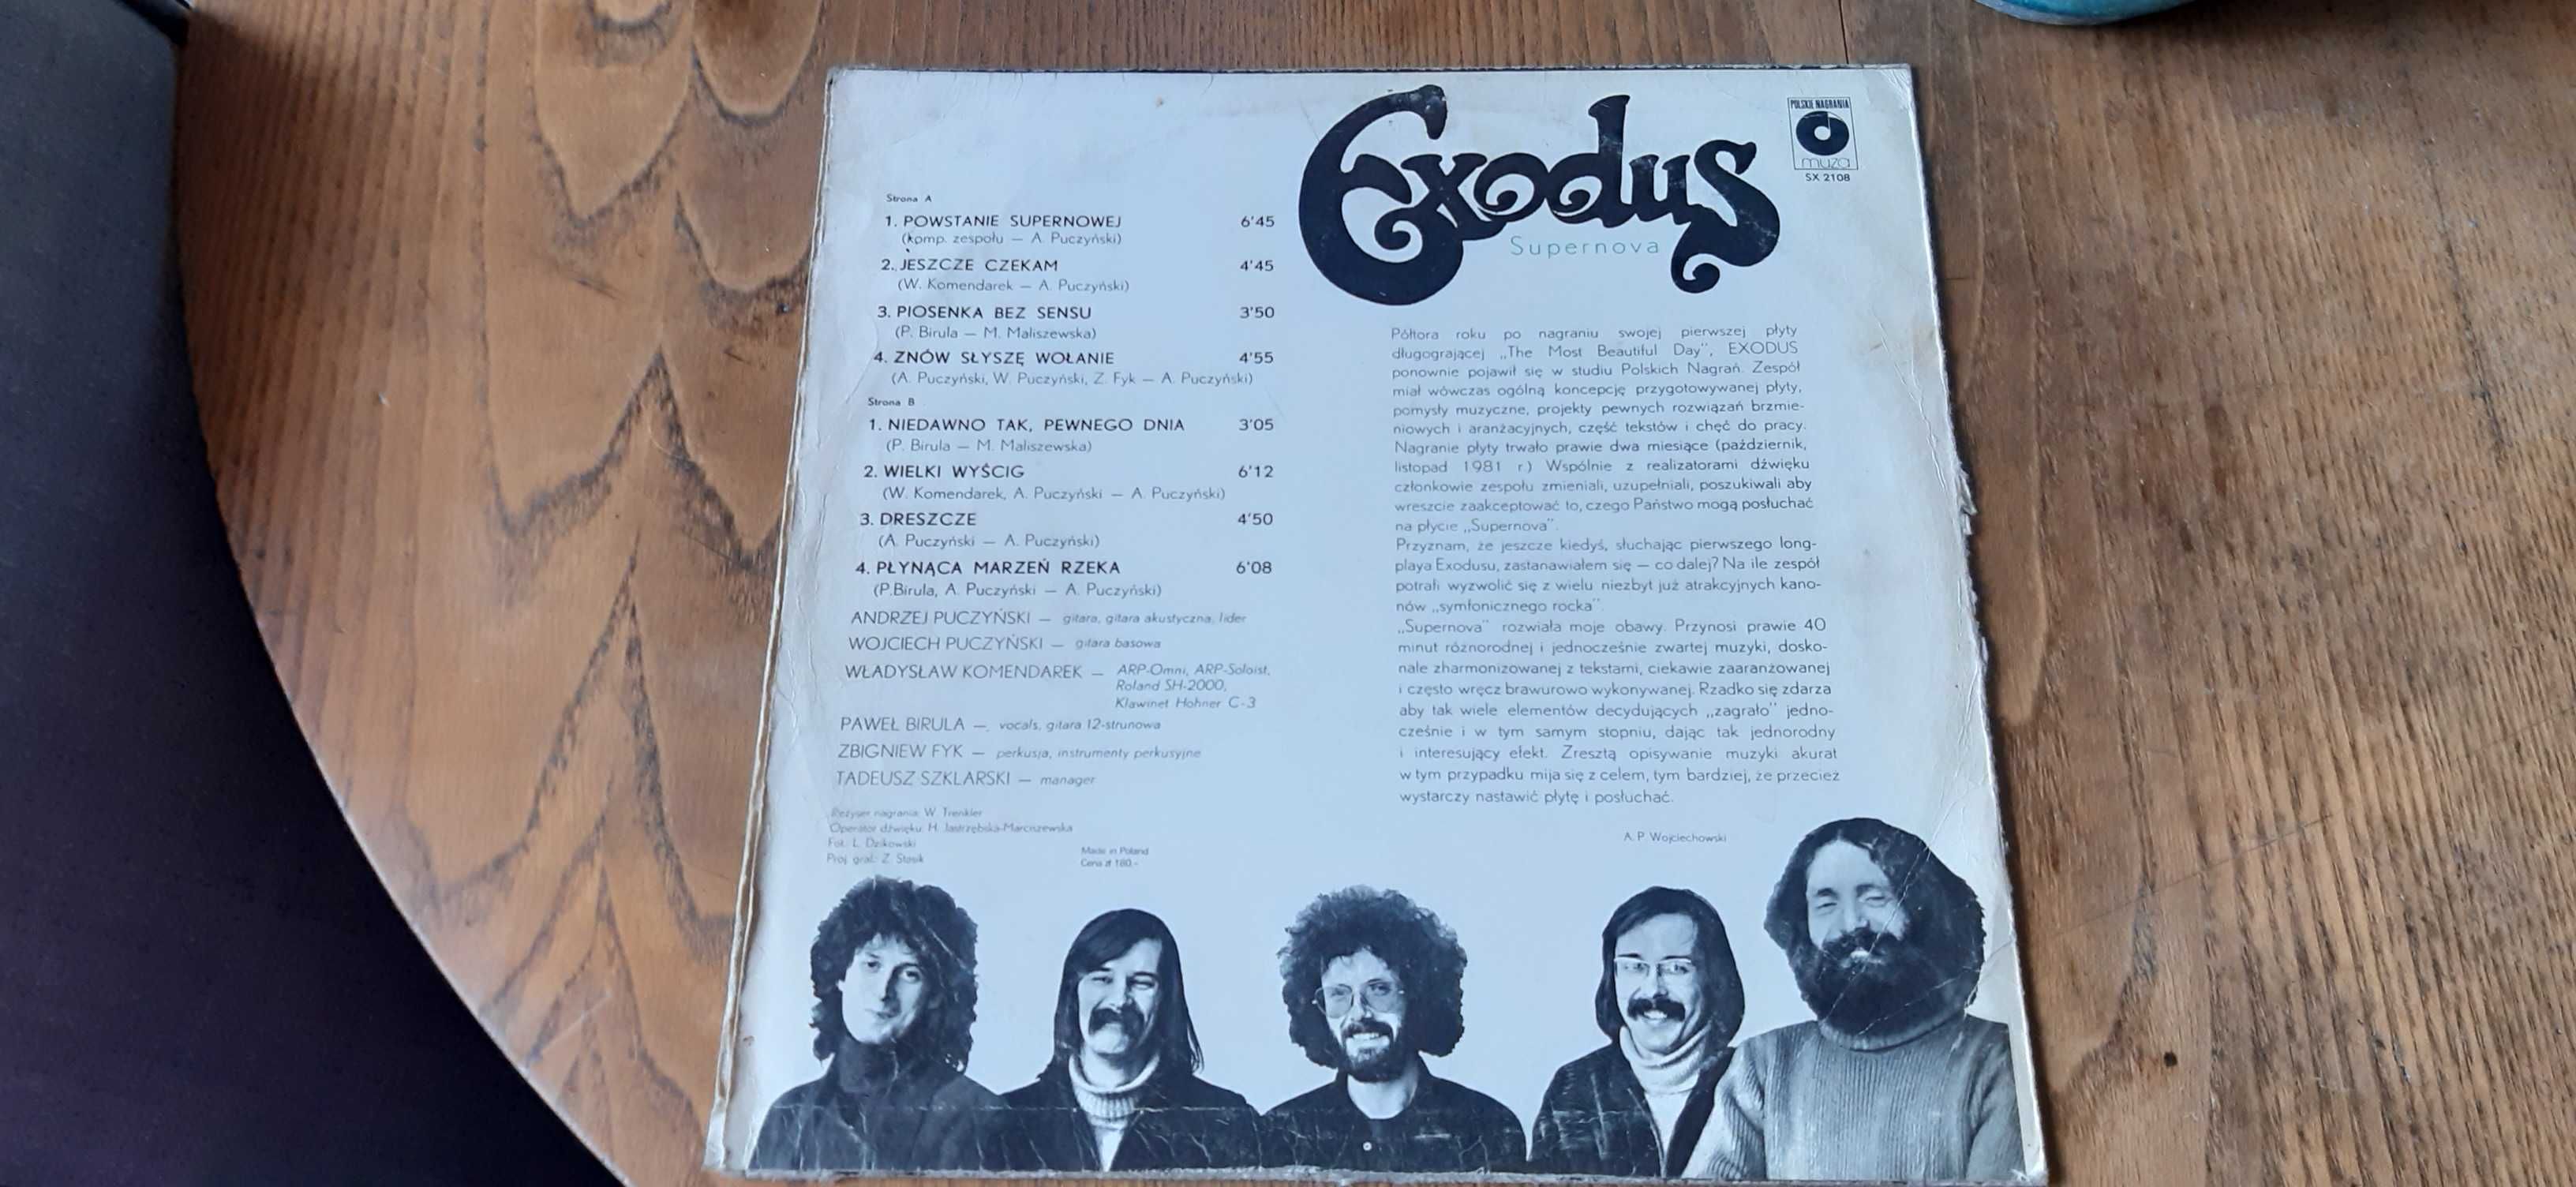 Exodus - "Supernova" vinyl VG (I wyd.)